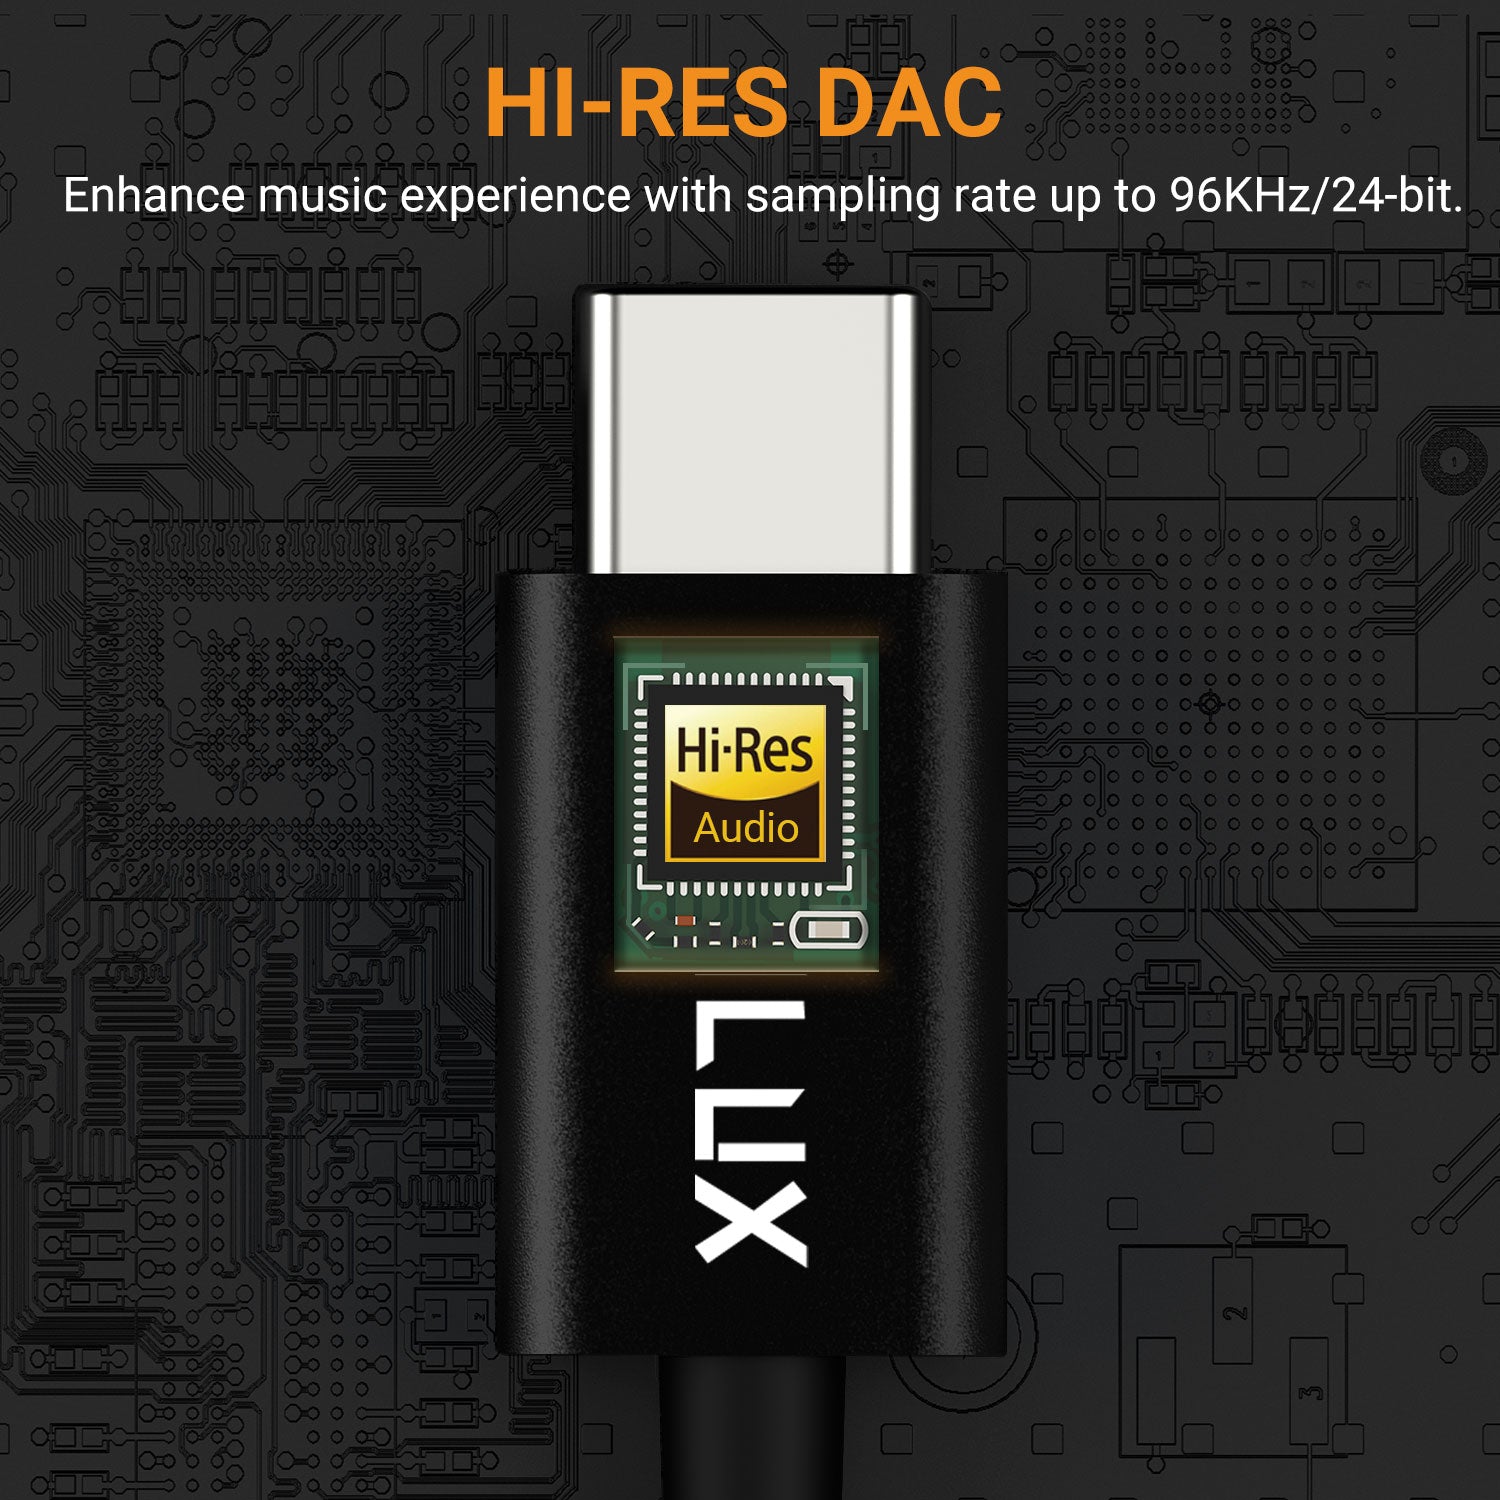 Built in Hi-Res DAC